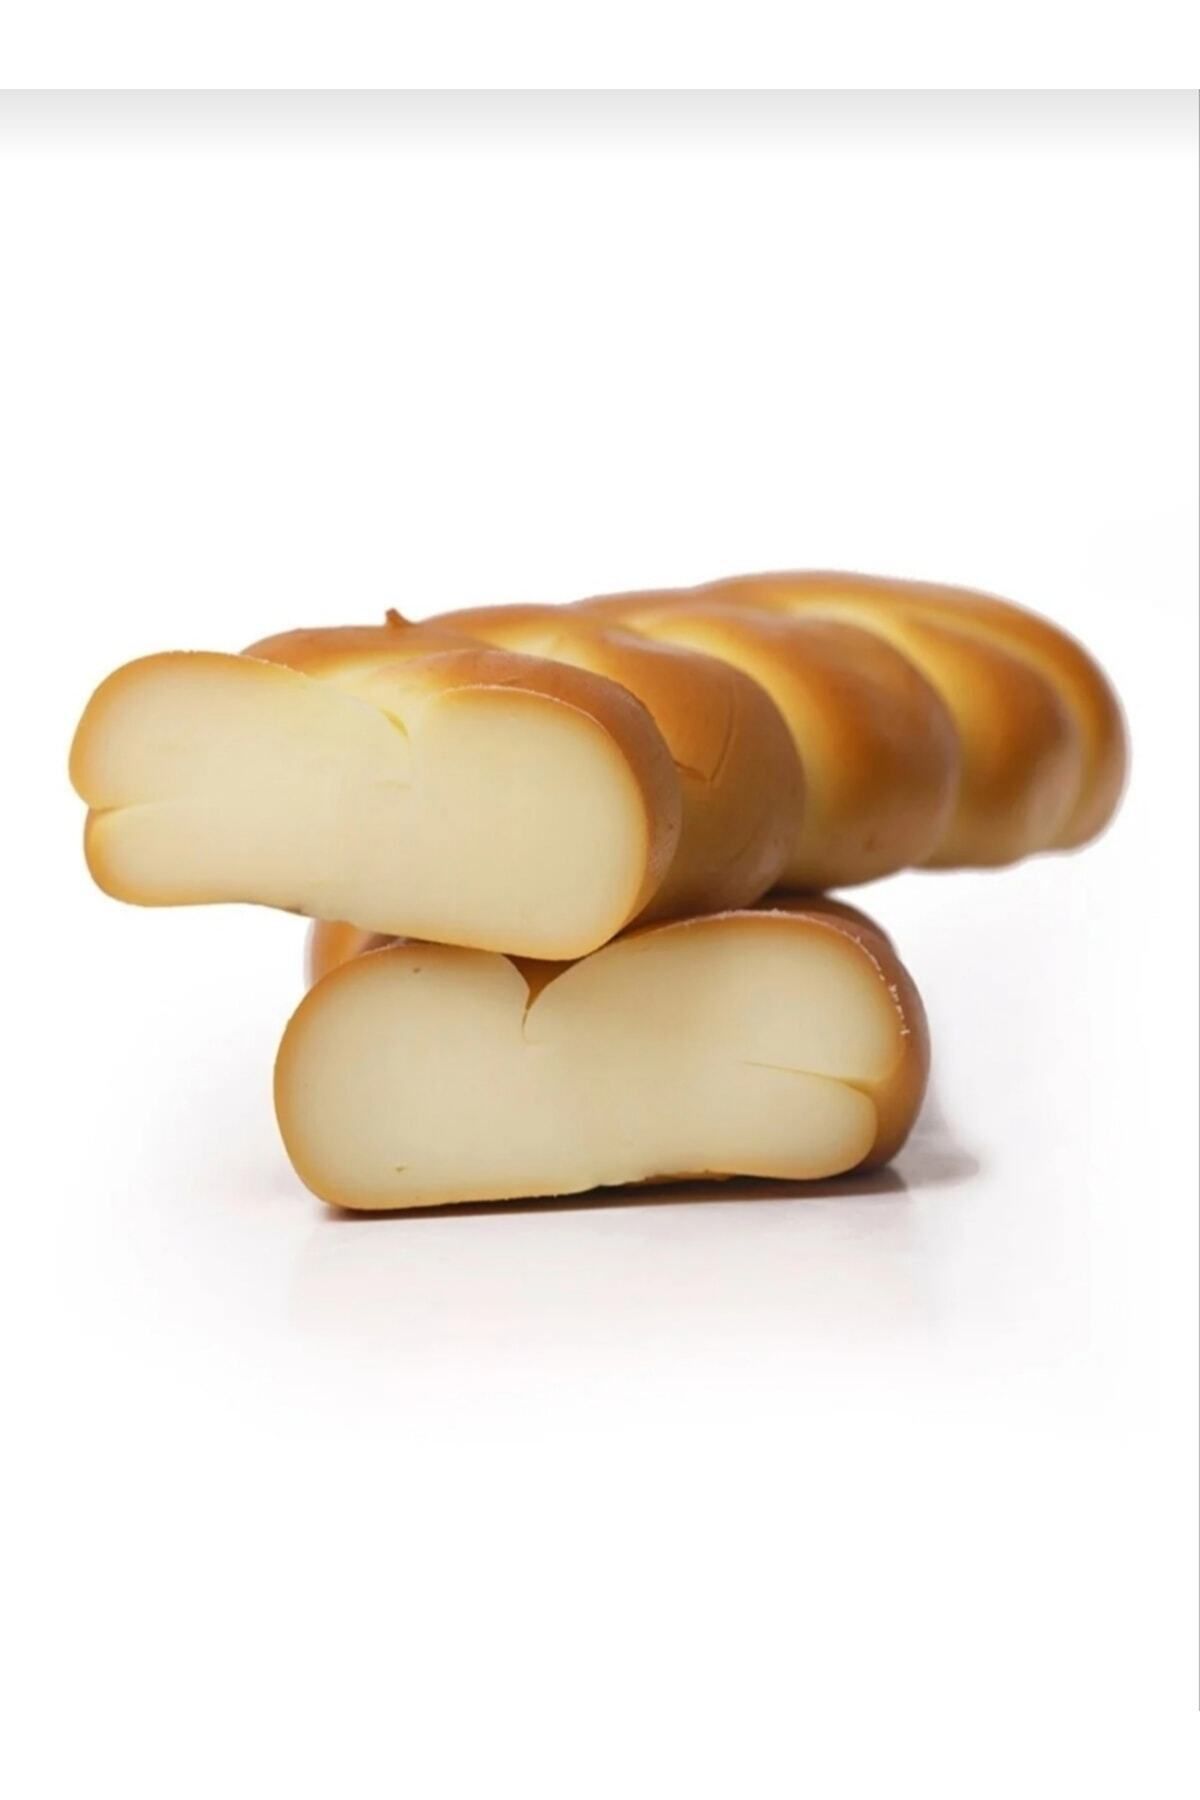 ÖZBOZÜYÜK Adapazarı isli örgü abaza peyniri 500 gr